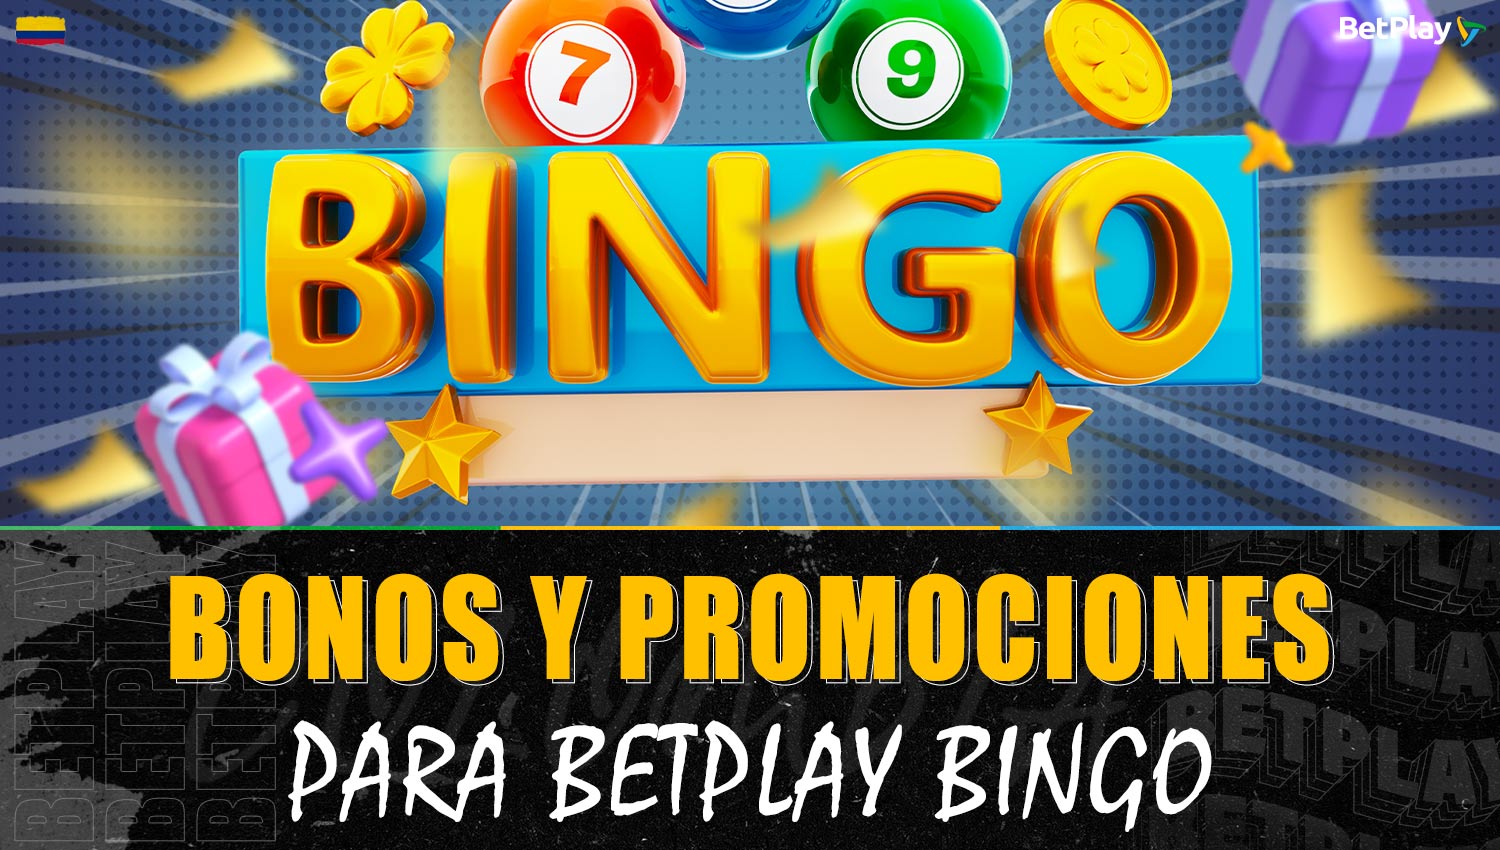 Bonos y promociones de bingo